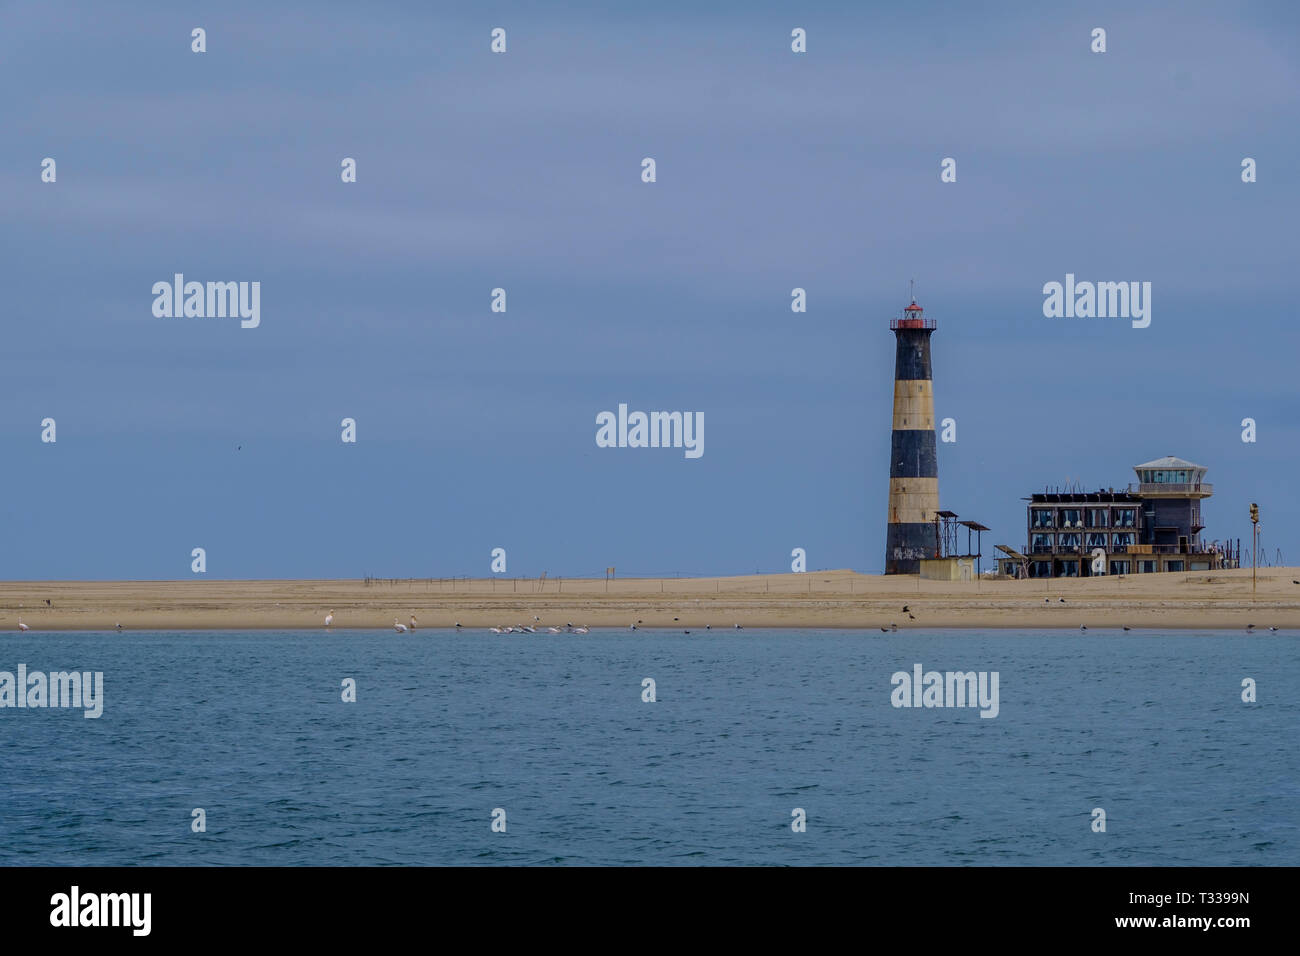 Rayas azules y blancas de Pelican Point Lighthouse junto al lodge encaramado sobre la franja de arena en el Océano Atlántico con birdlife en tierra con espacio de copia Foto de stock